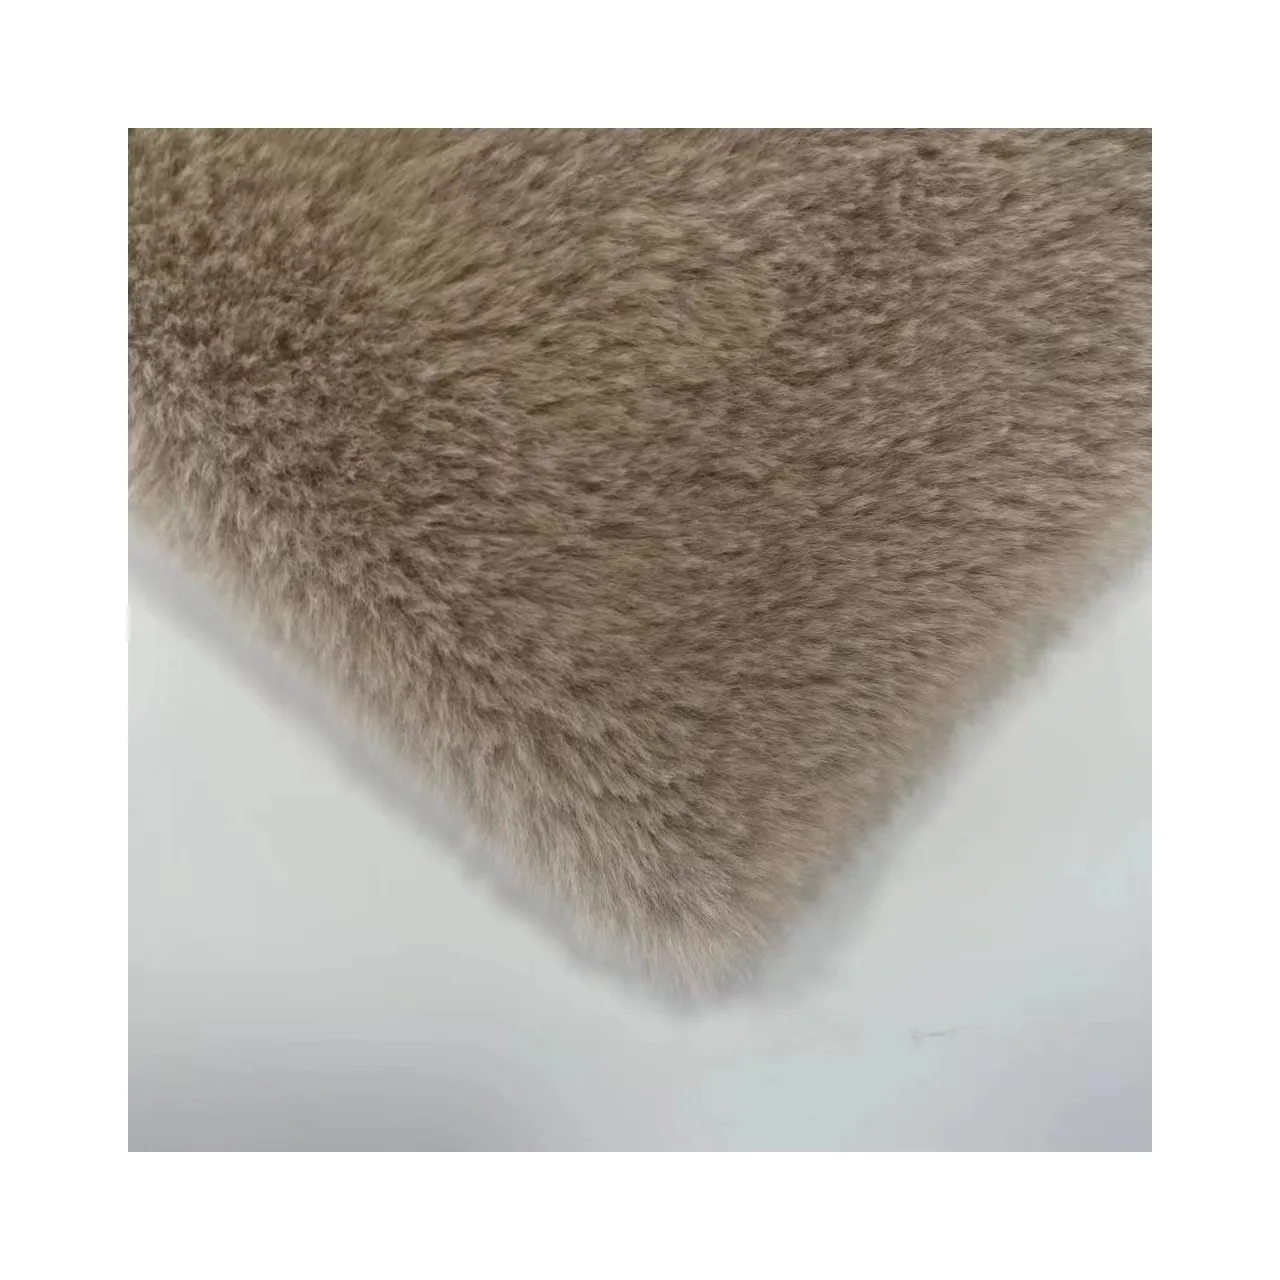 Venta caliente pelo de piel pesada superficie uso señora prendas moda PV15 pelo de conejo telas de invierno para ropa manta de terciopelo de invierno